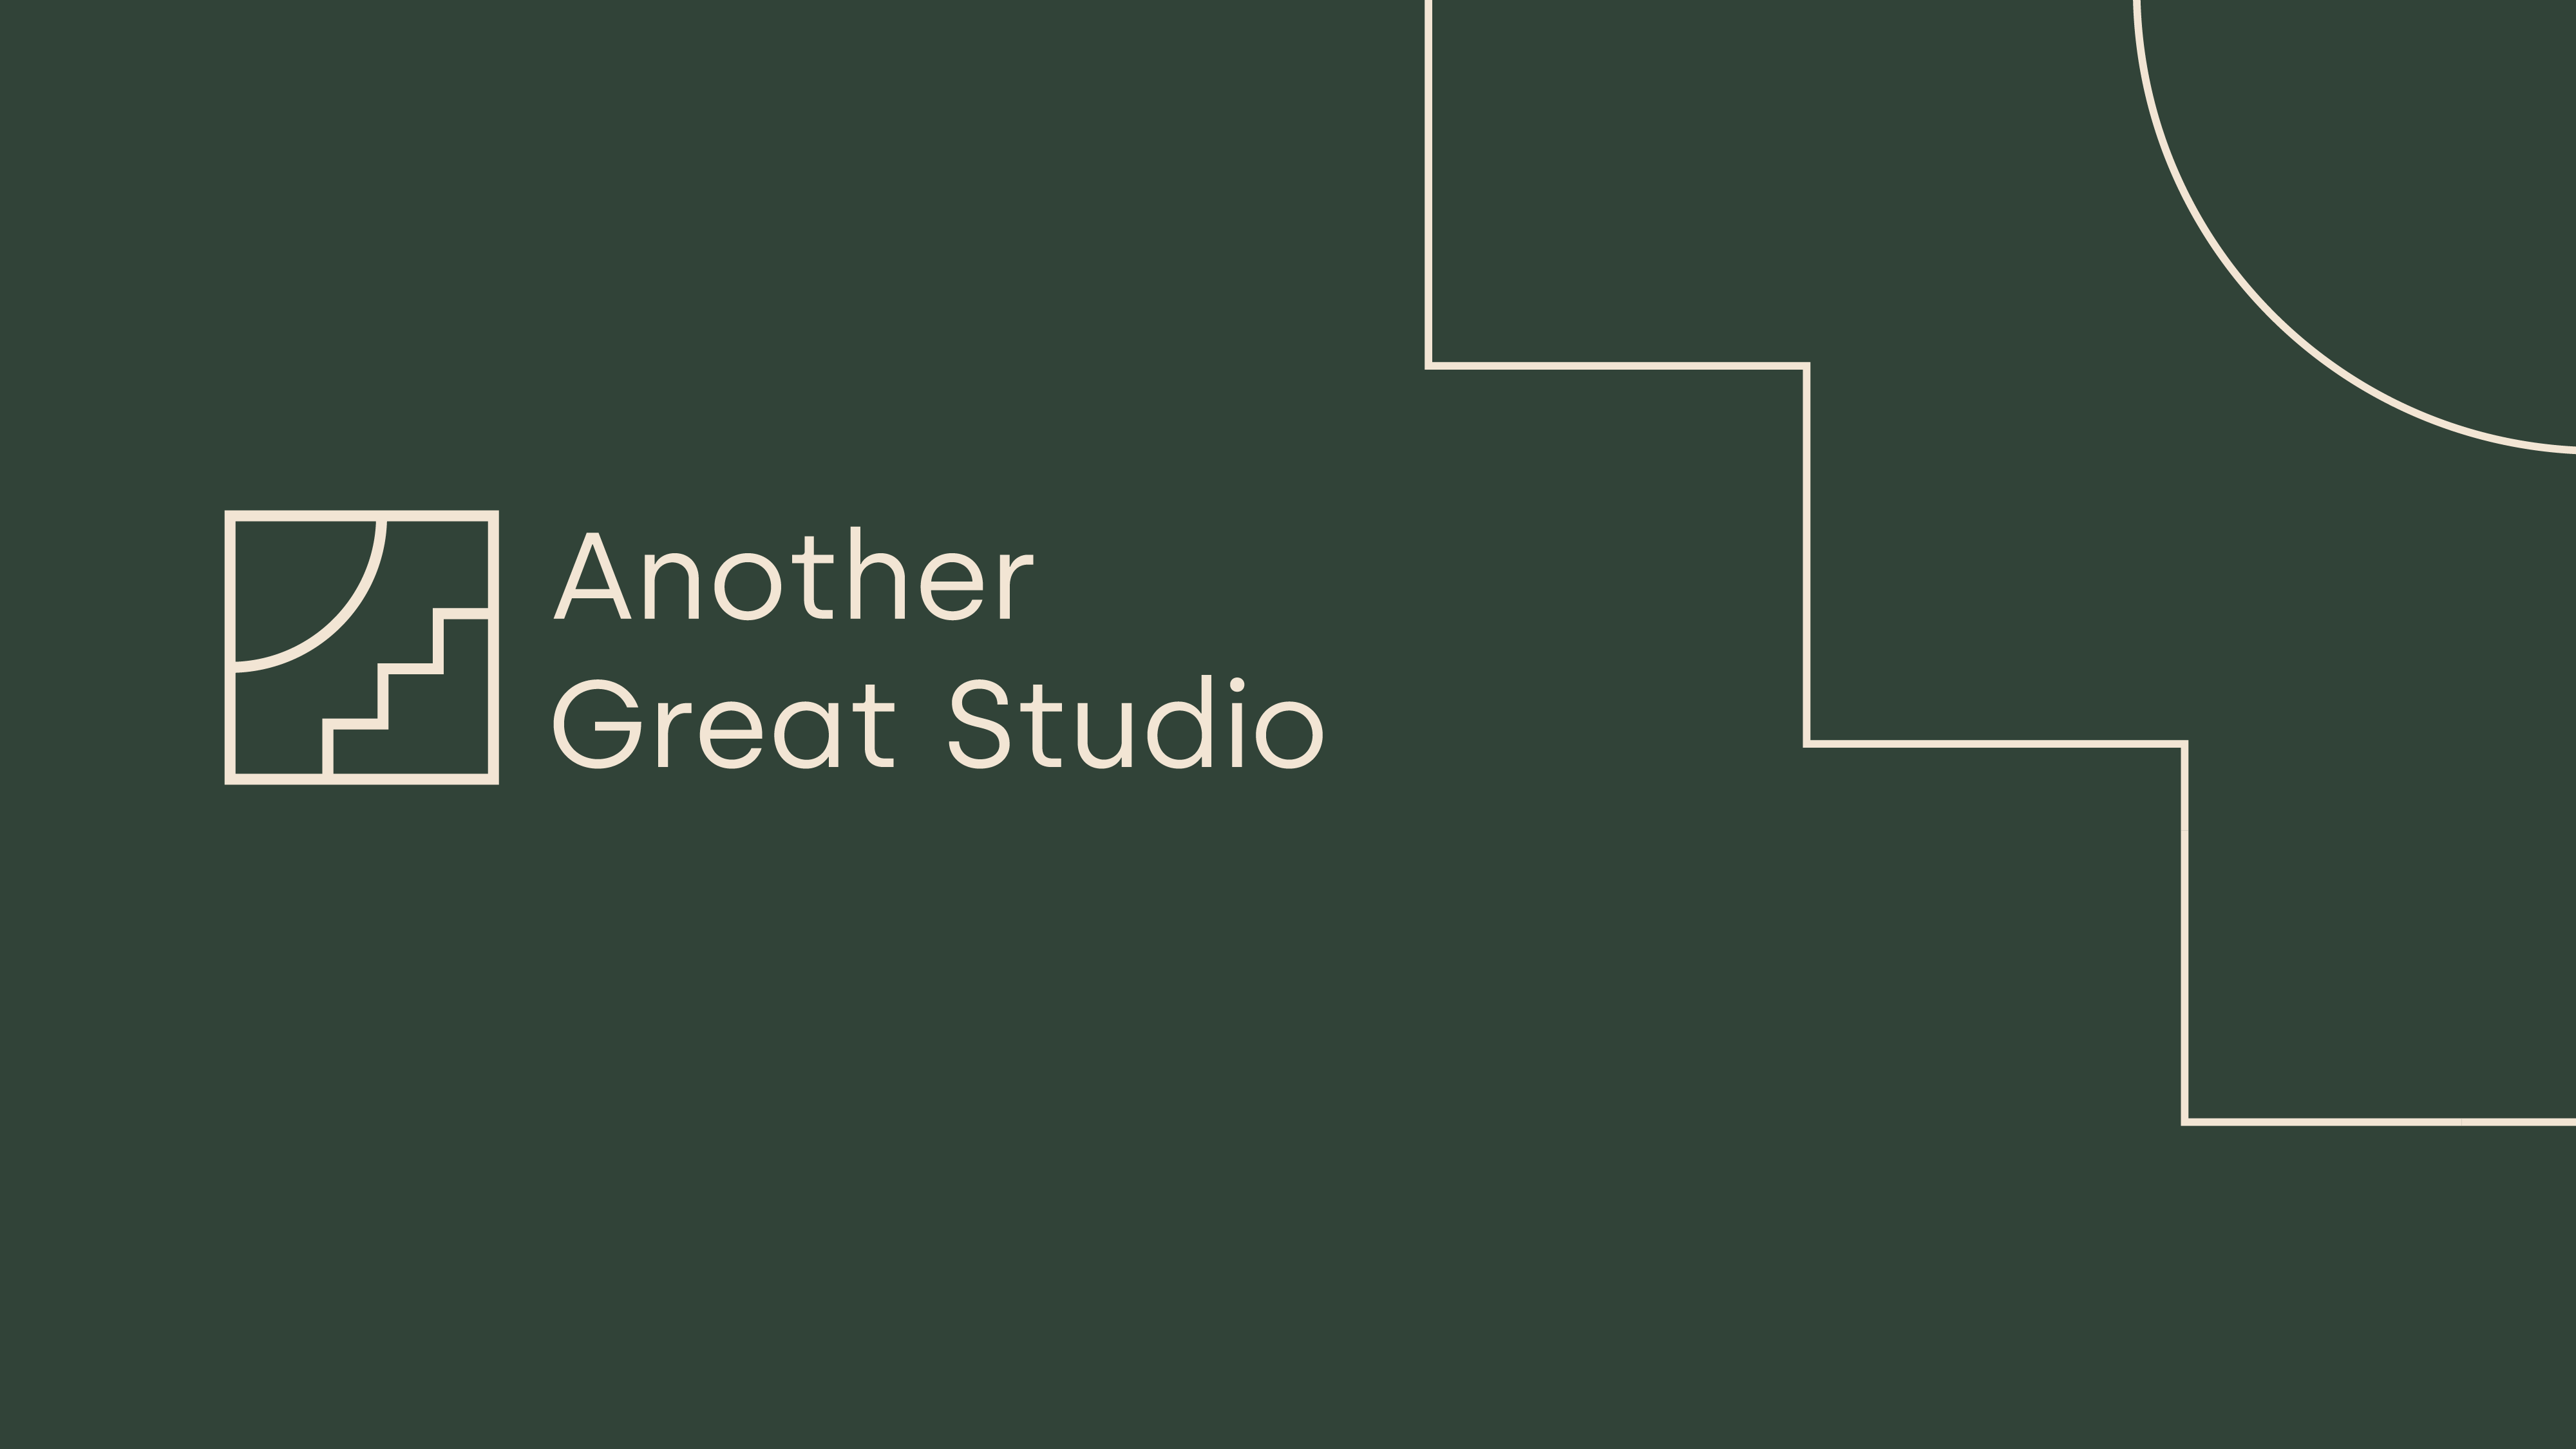 Another Great Studio - Another Great Studio